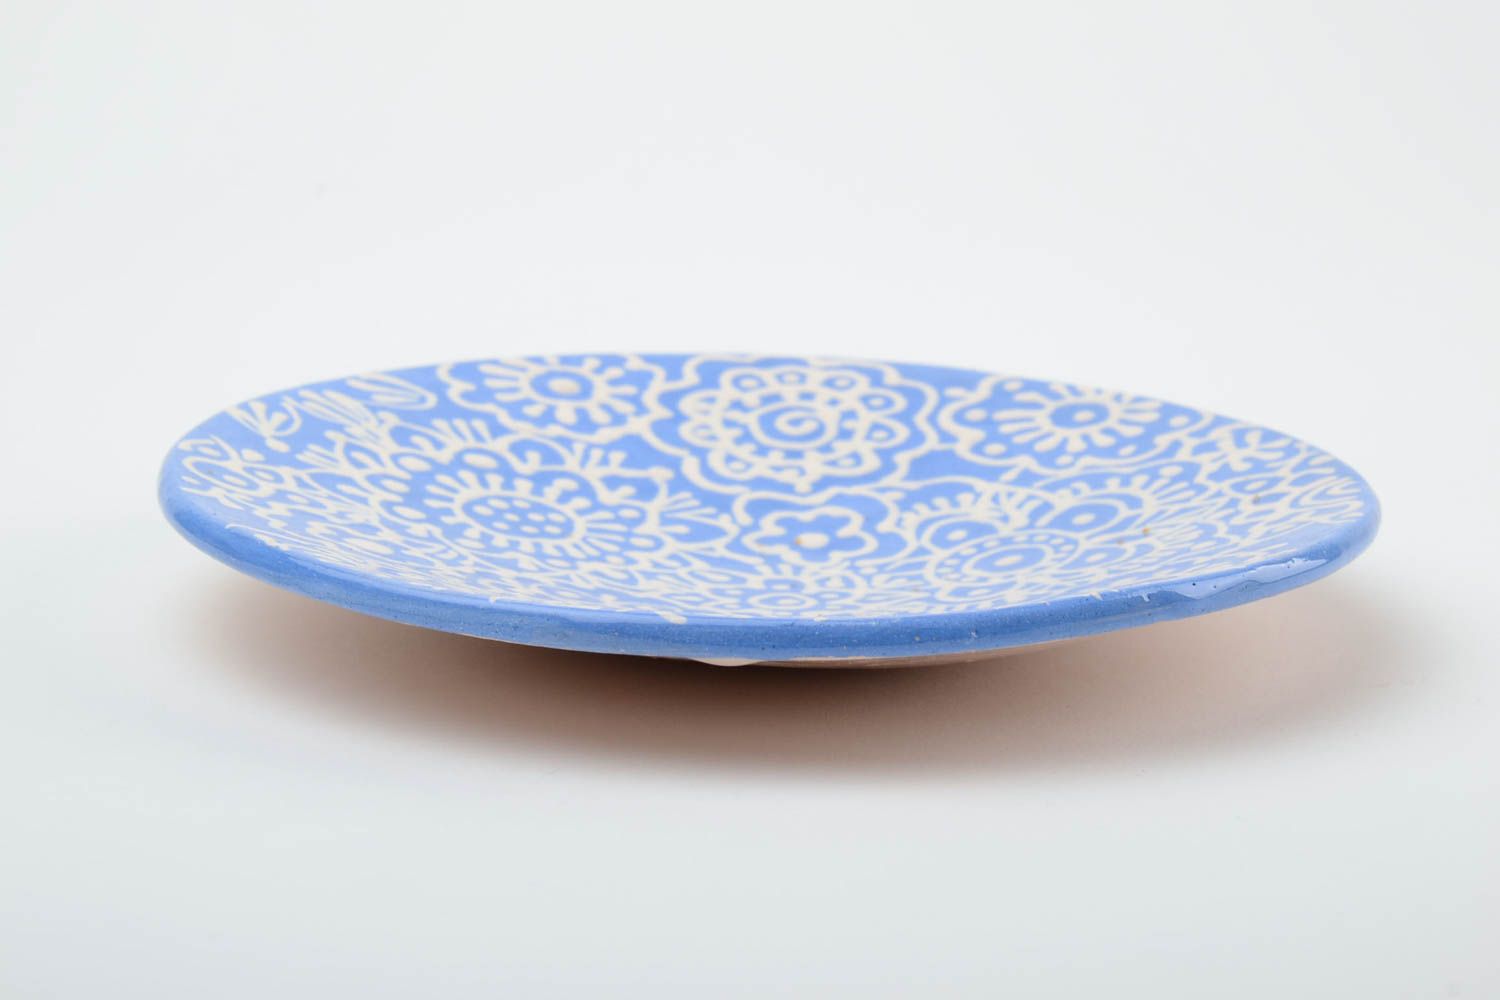 Handmade Keramik Untertasse mit Muster in Blau und Weiß klein schön glasiert für Teeparty foto 4